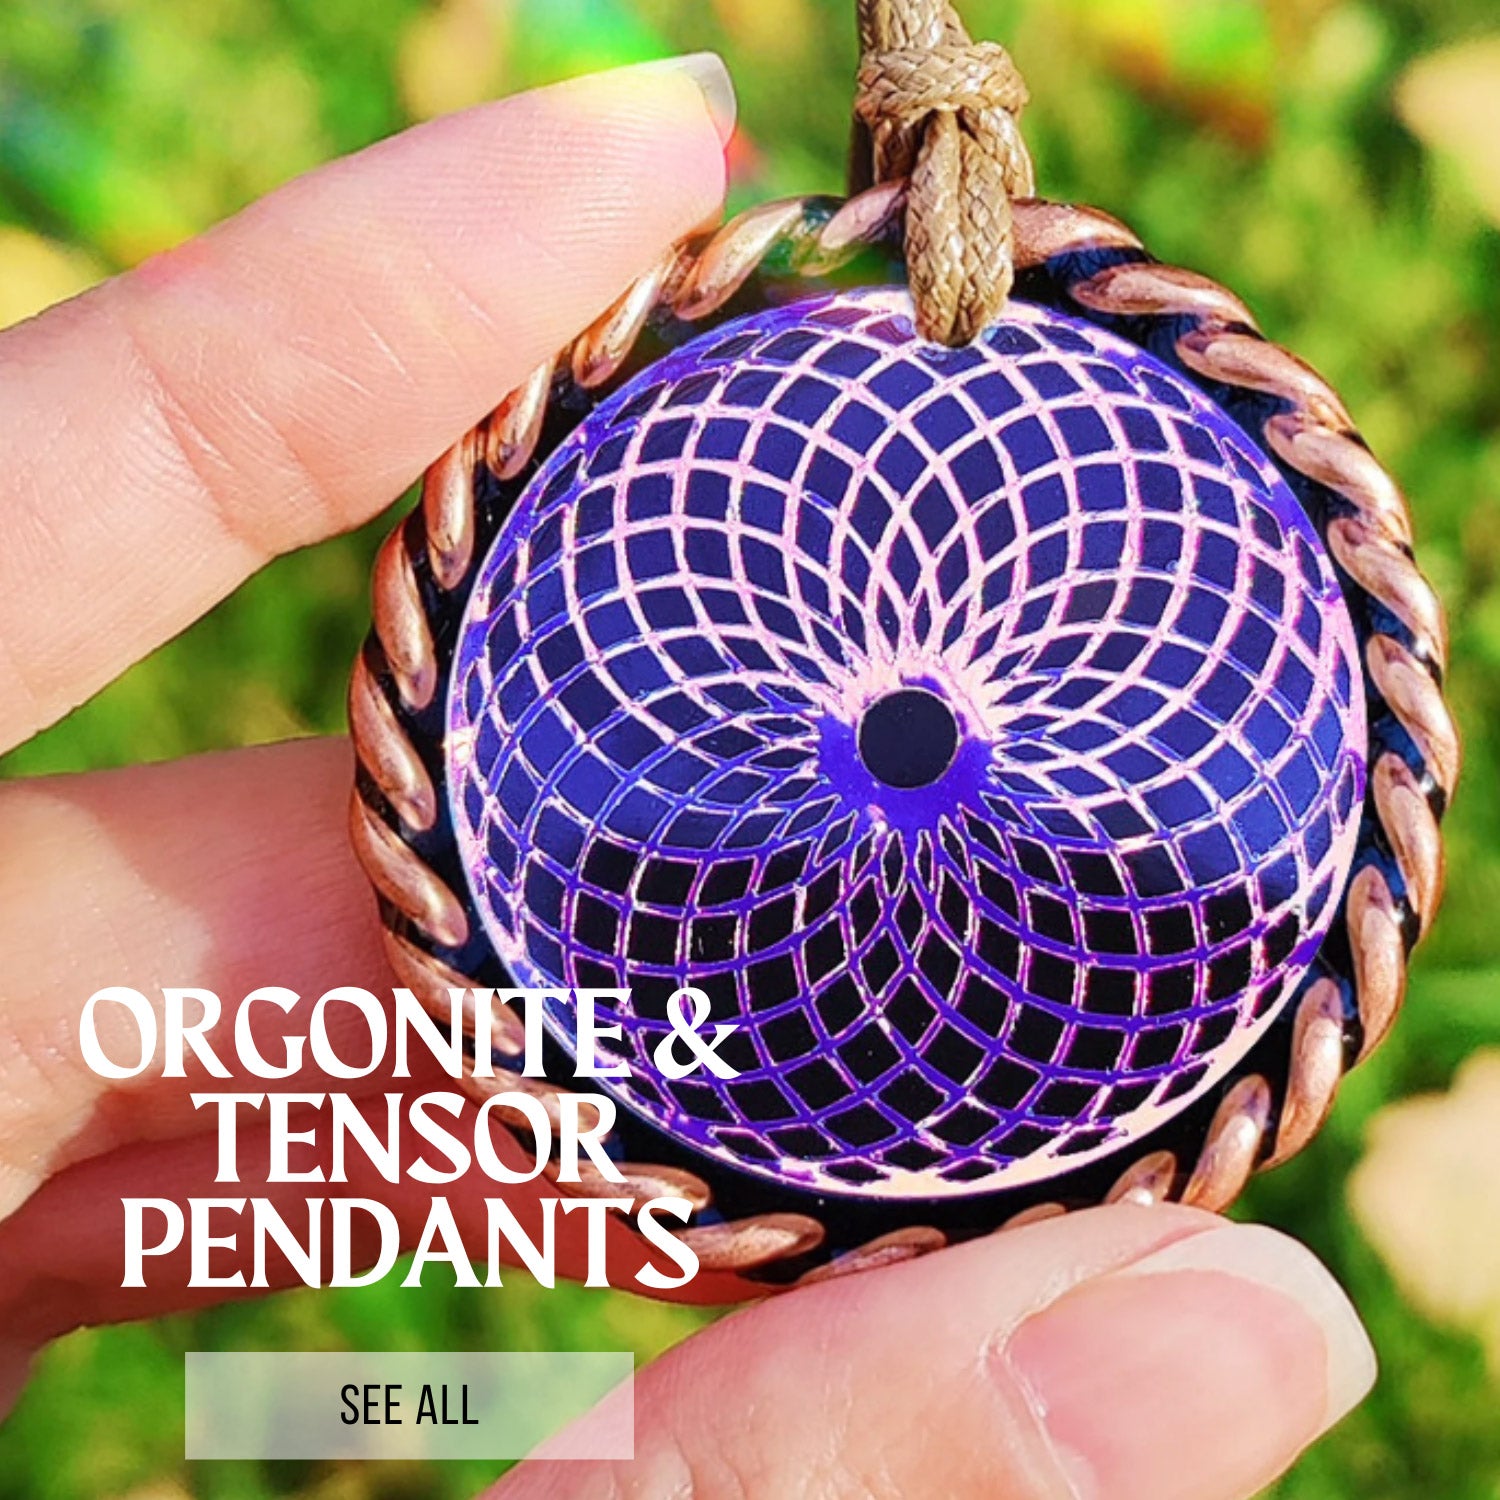 Orgonite & Tensor Pendants